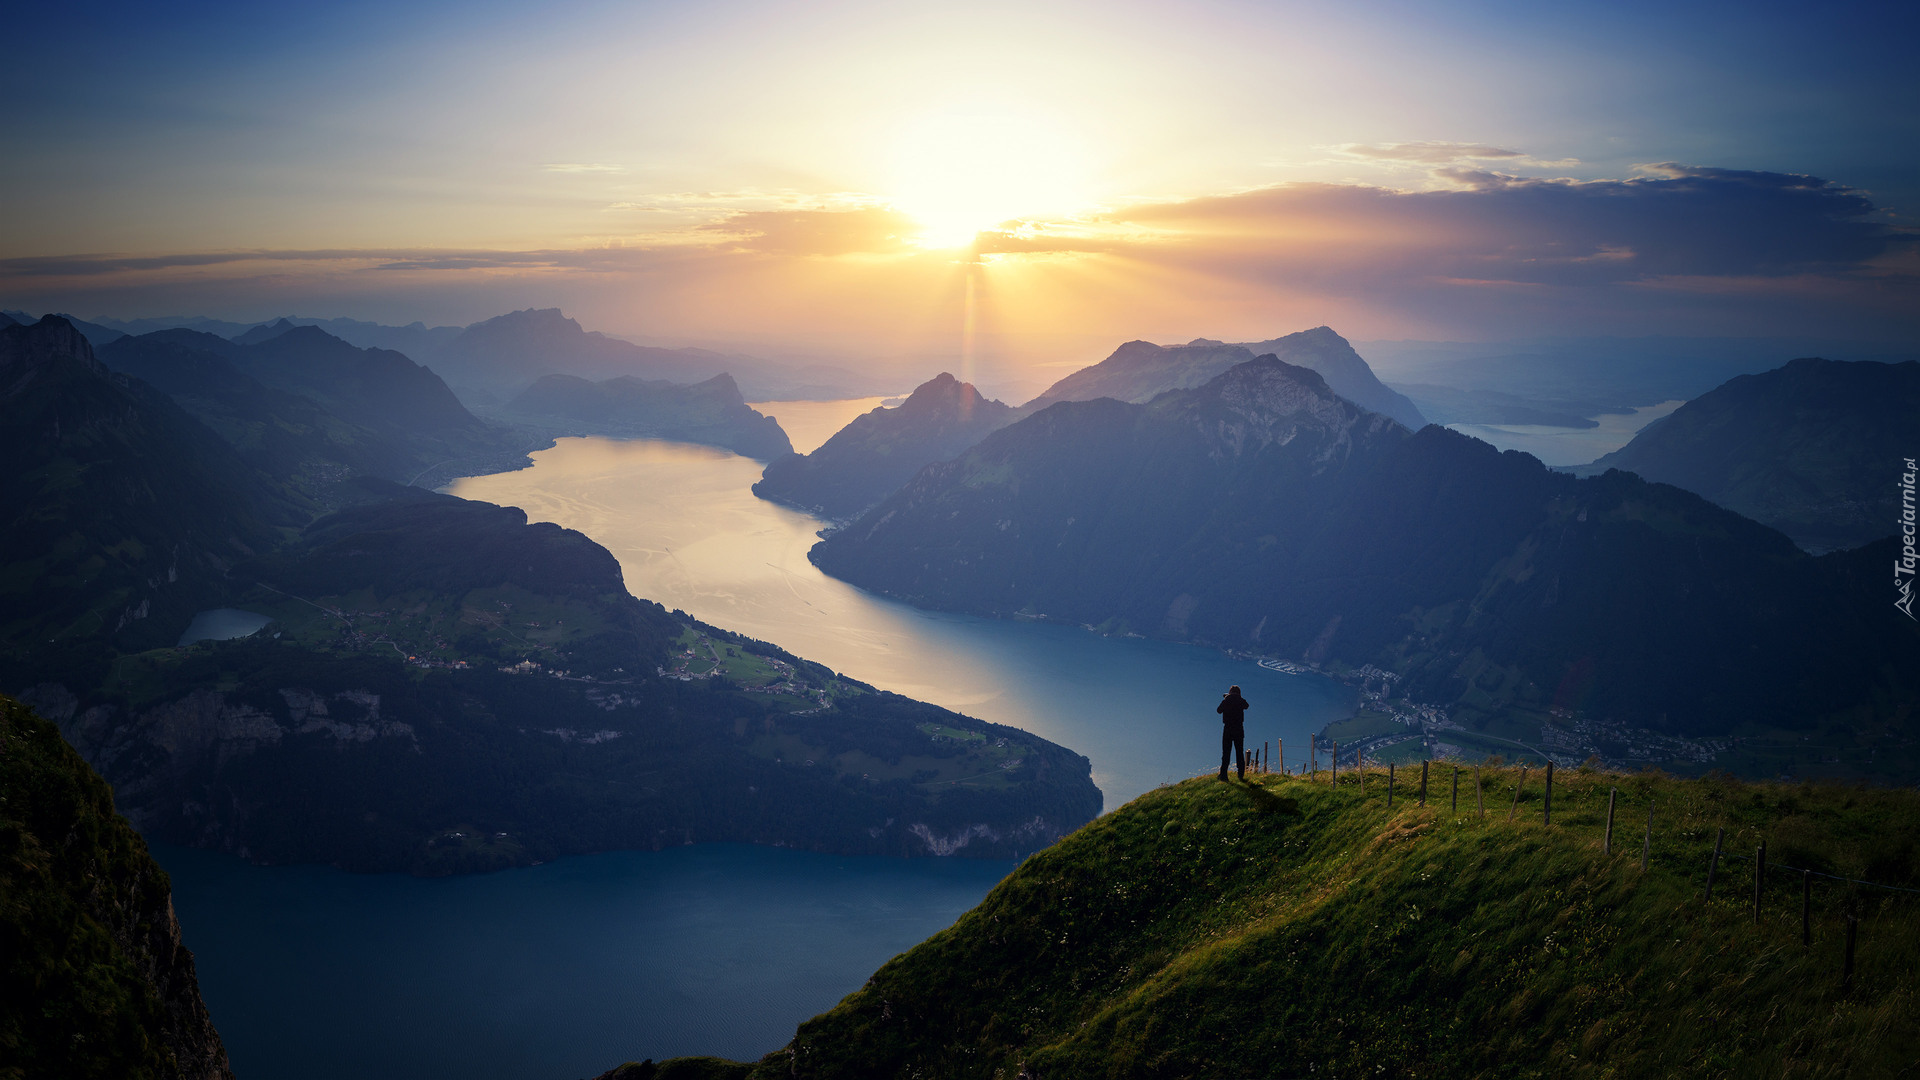 Szwajcaria, Jezioro Czterech Kantonów, Człowiek, Góry, Promienie słońca